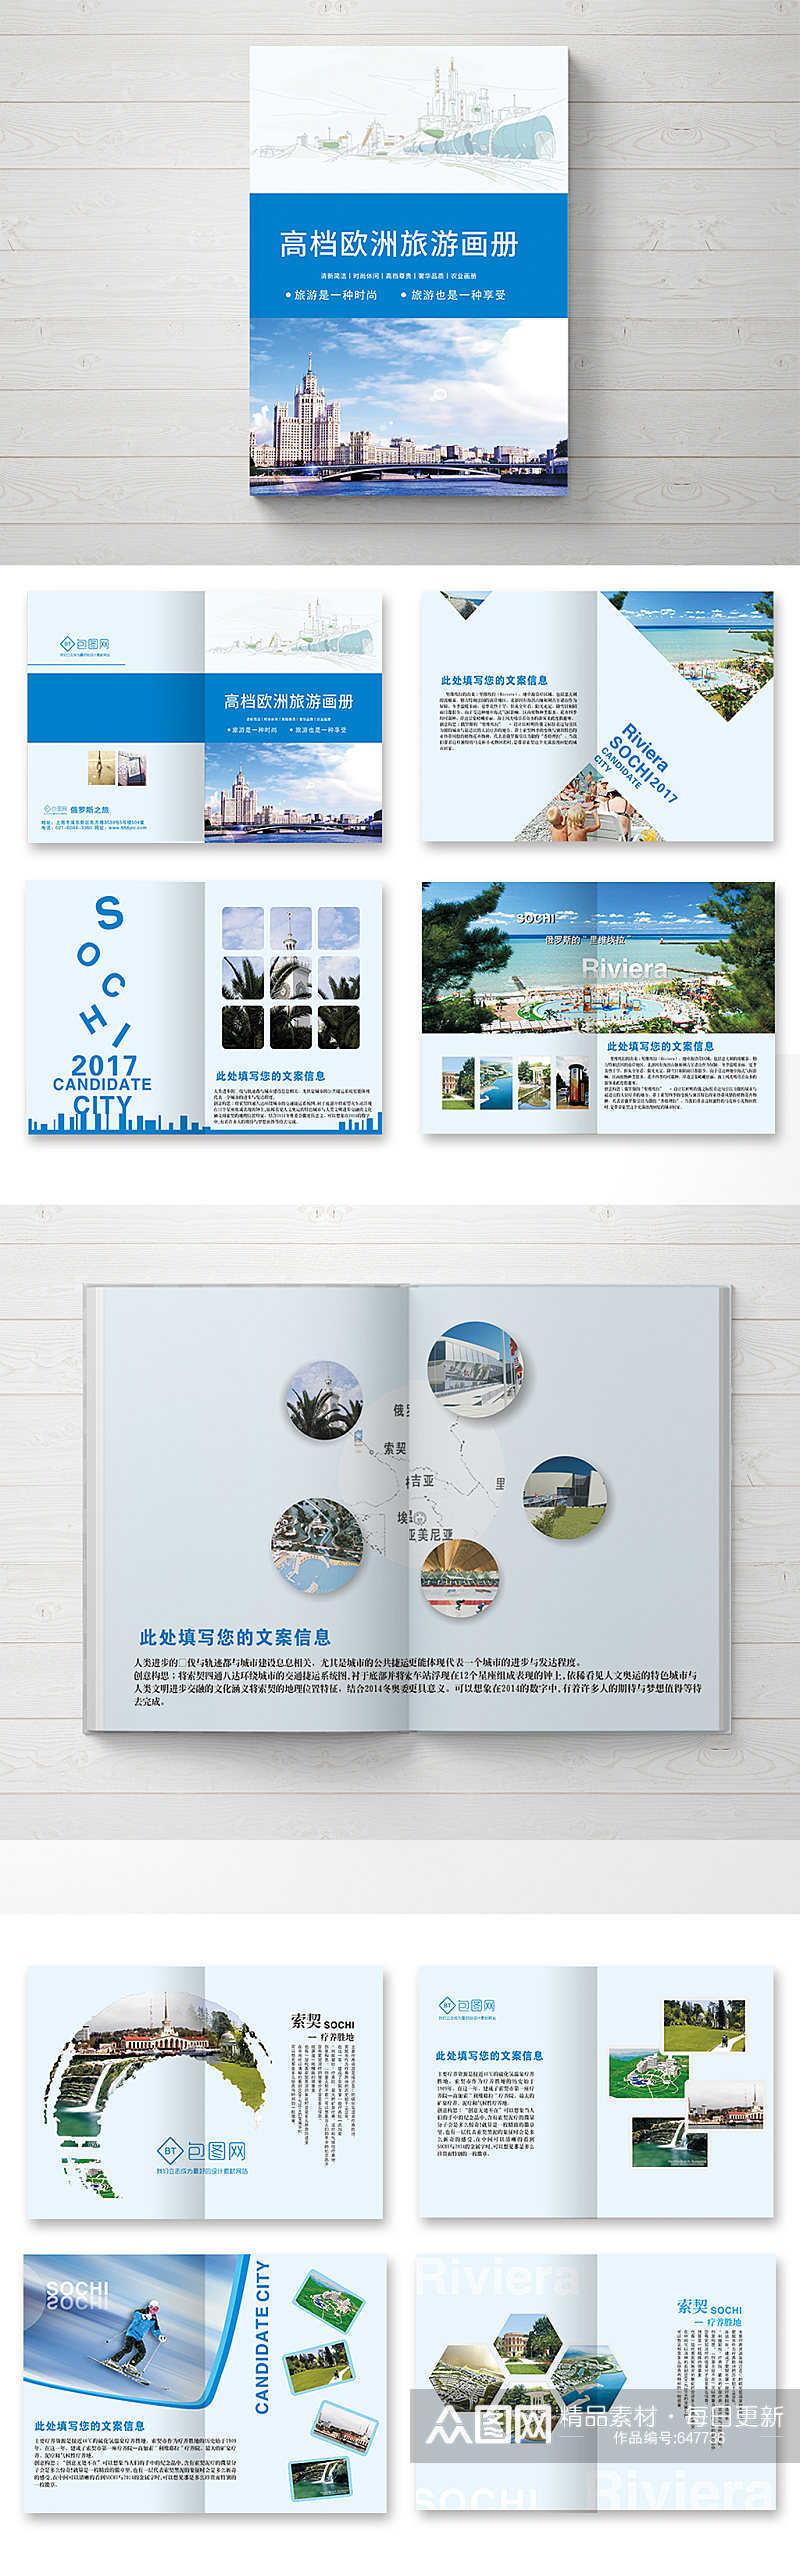 蓝色简洁大气清新旅游画册整套设计户外宣传册素材